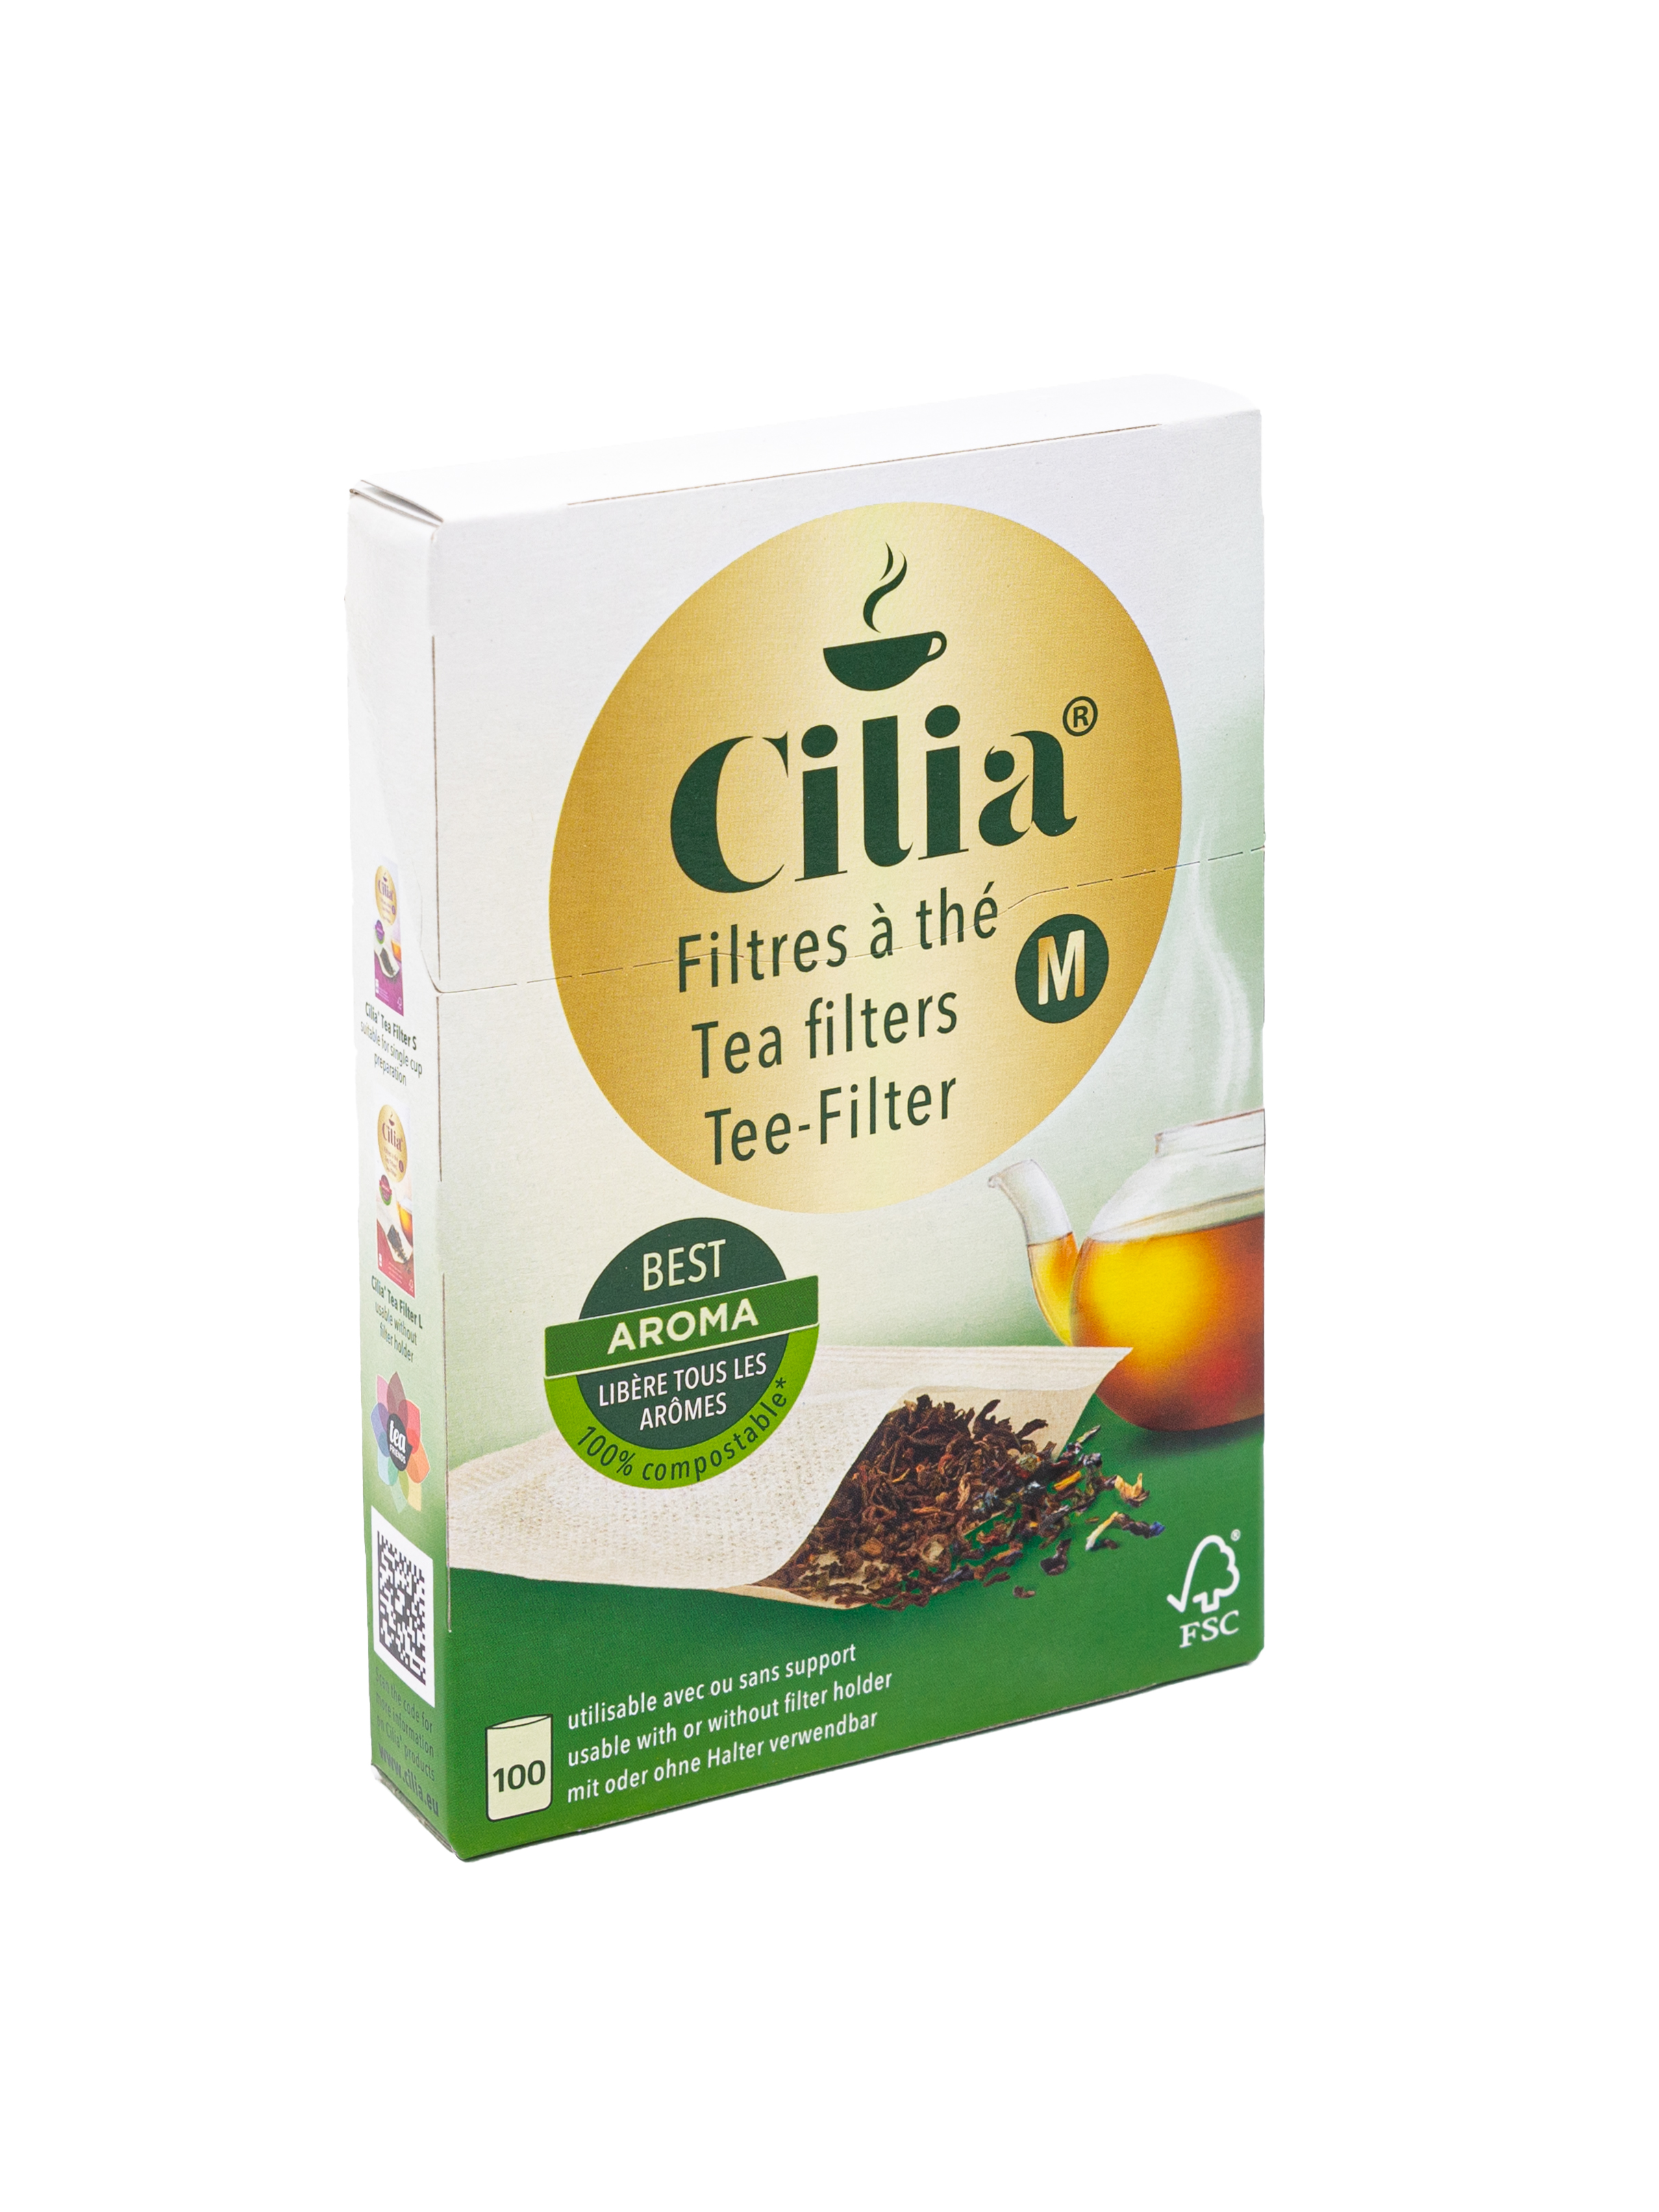 Cilia® Teefilter M: Der vielseitige Teefilter für das volle Tee-Aroma